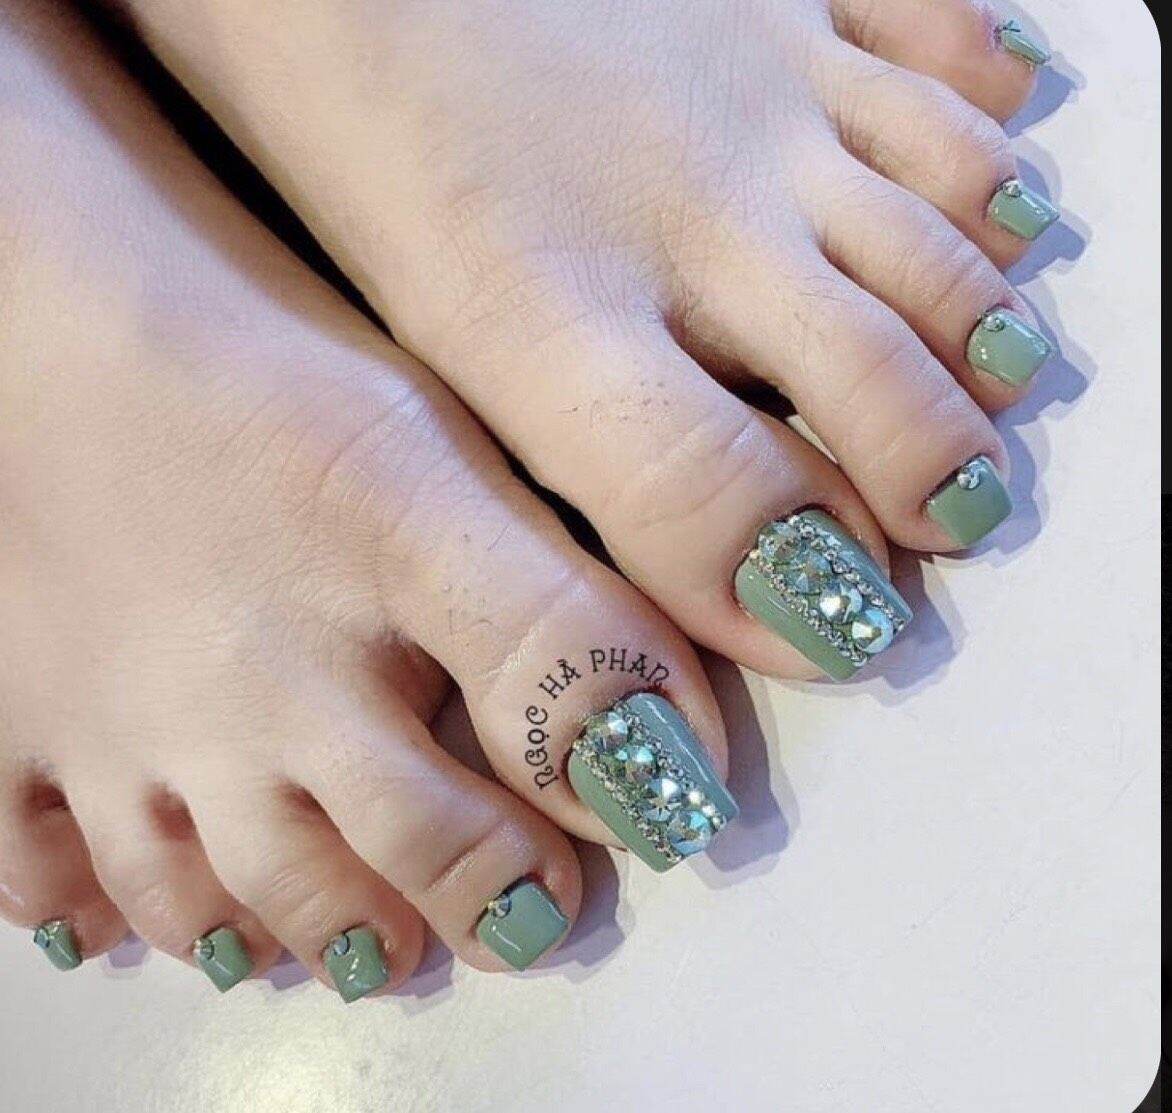 Top 100 những mẫu nail chân xanh ngọc được yêu thích nhất